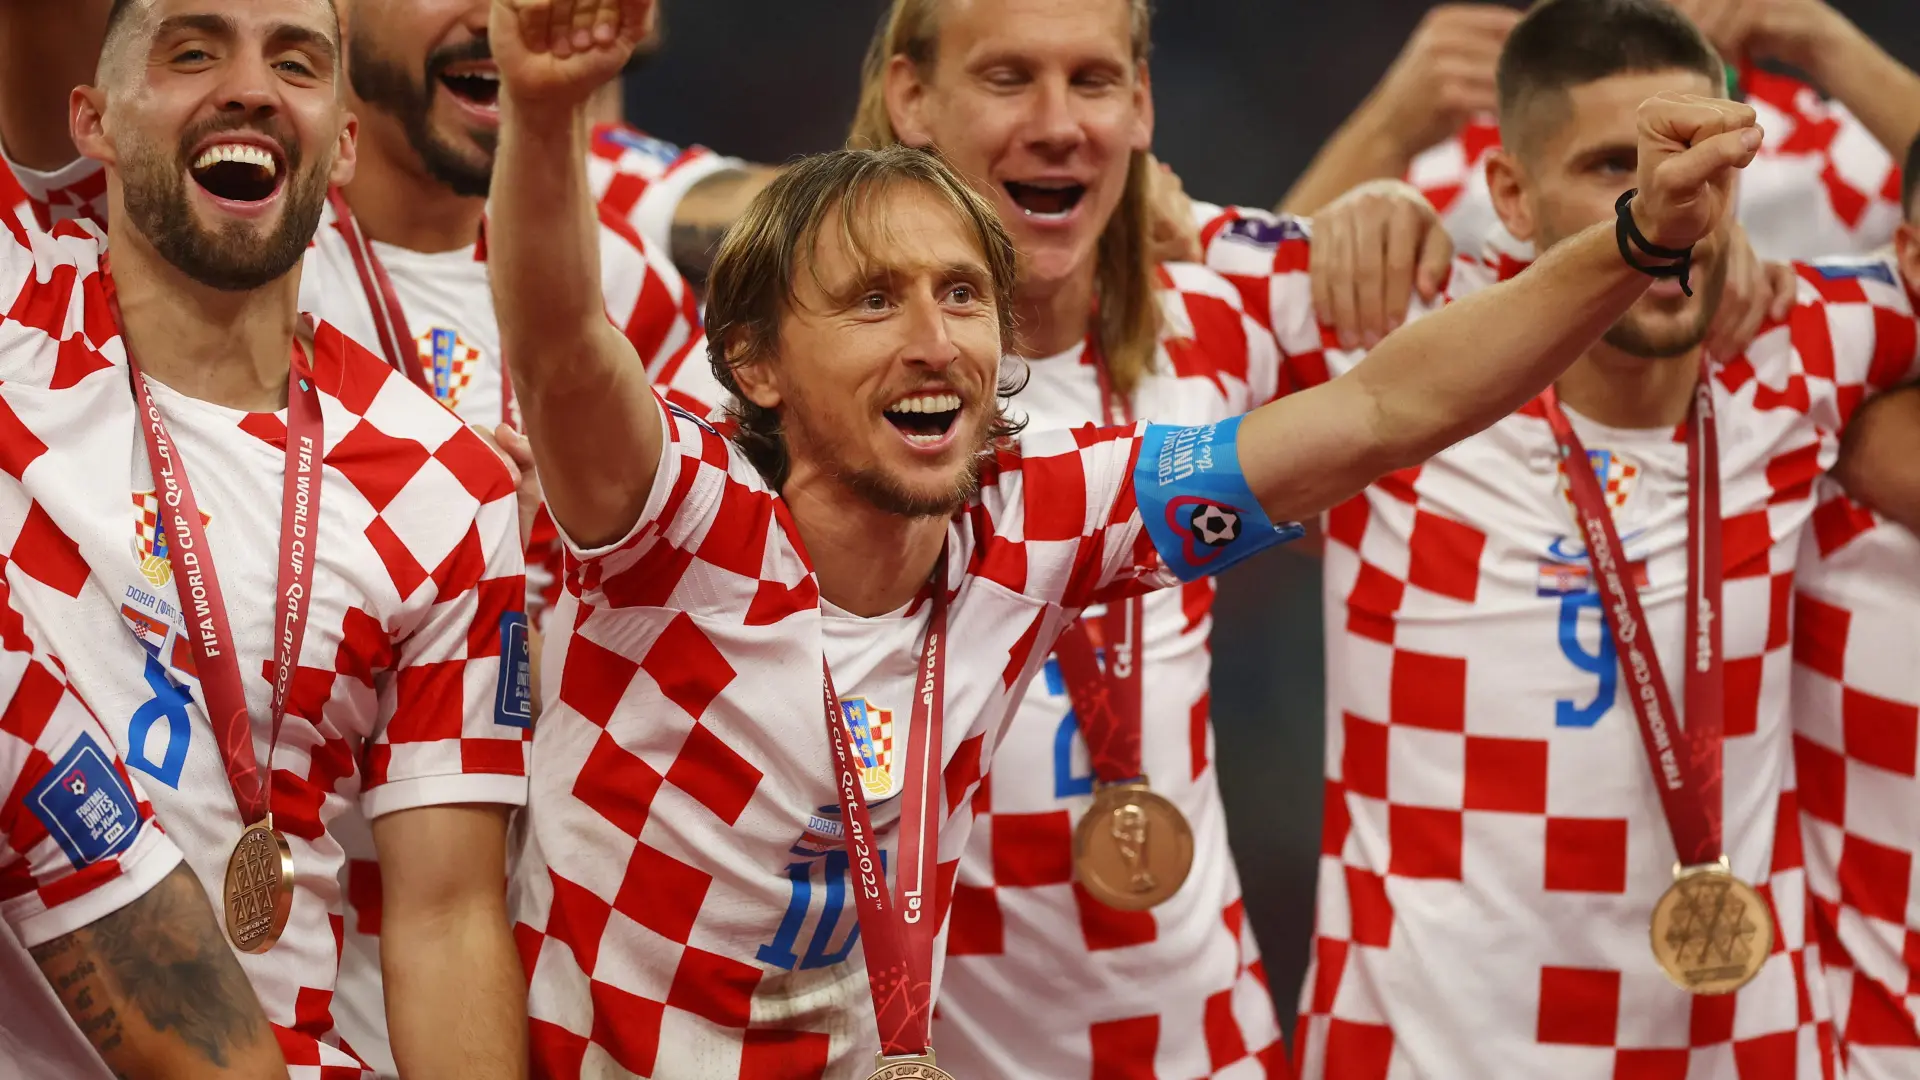 Orsic alumbra el adiós de Modric y da el tercer puesto a Croacia